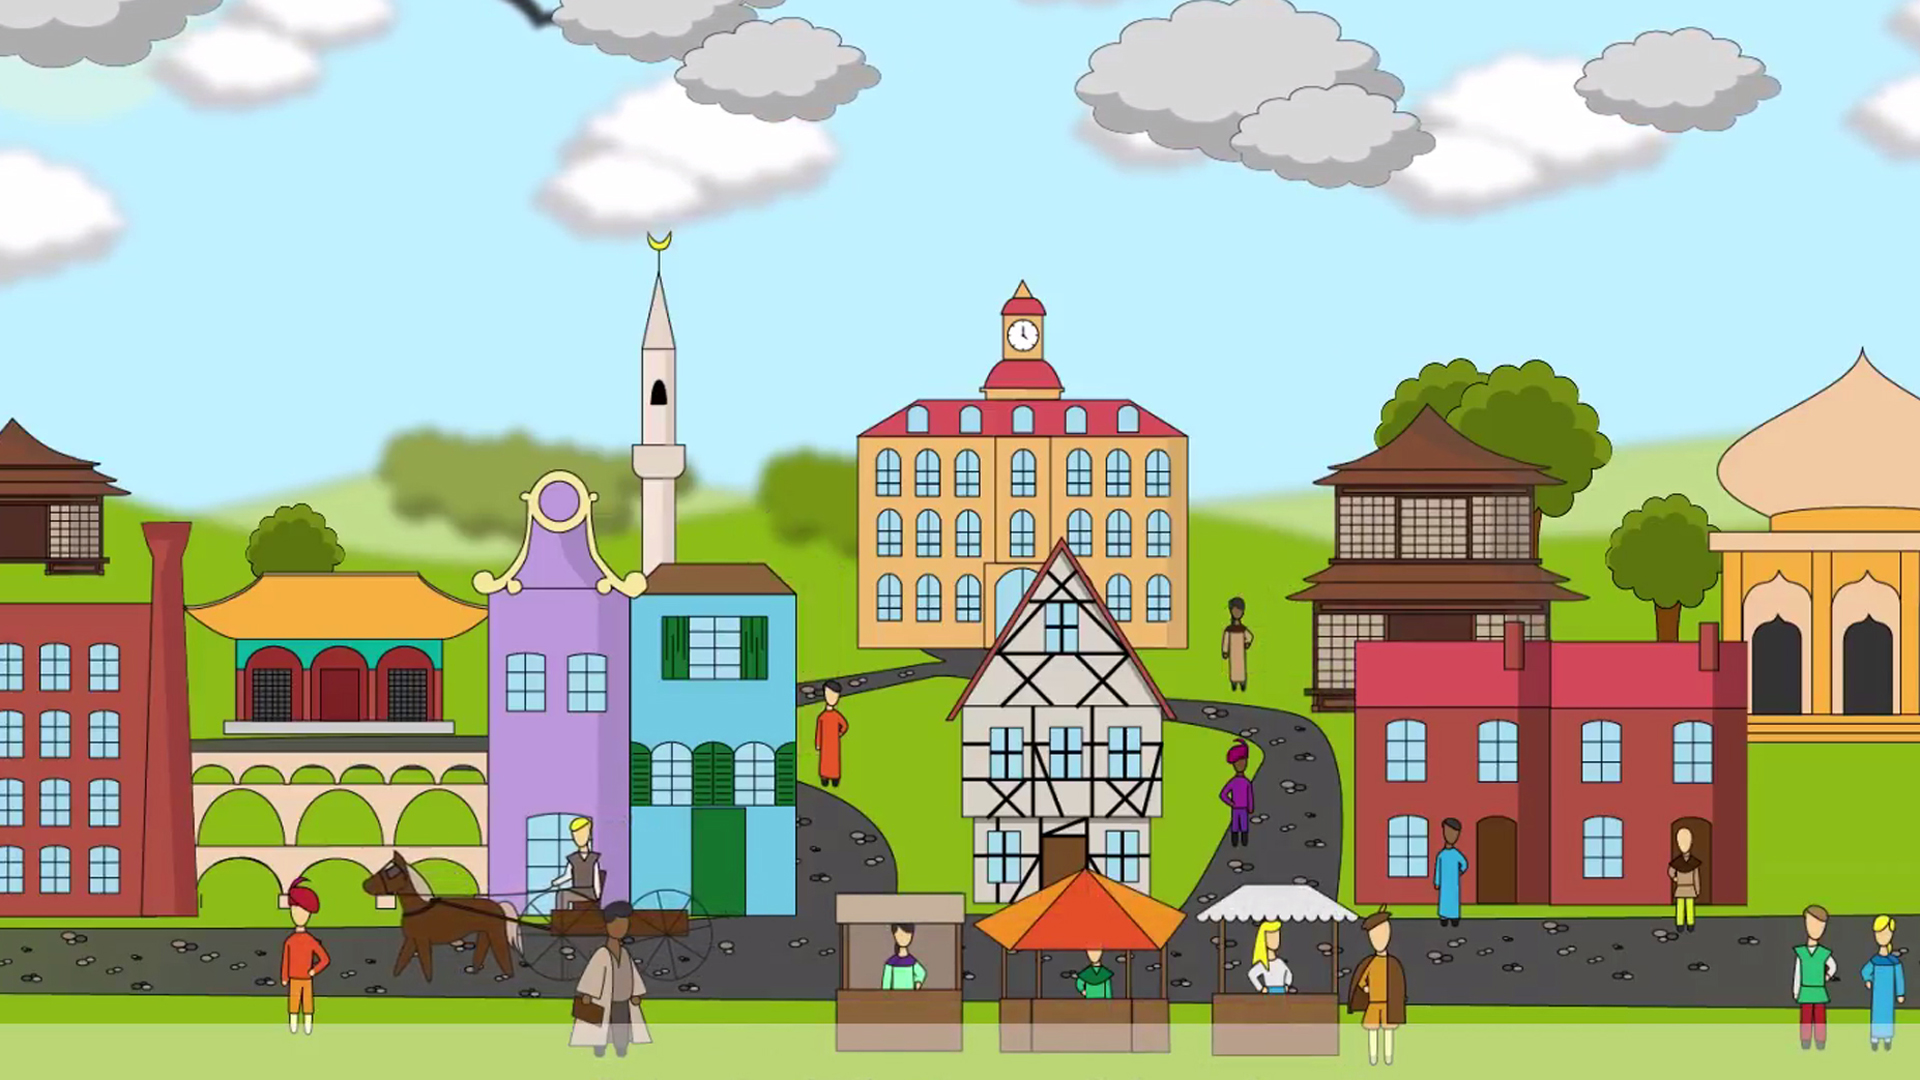 Standbild aus dem BMZ-Video "Städte für eine bessere Welt"